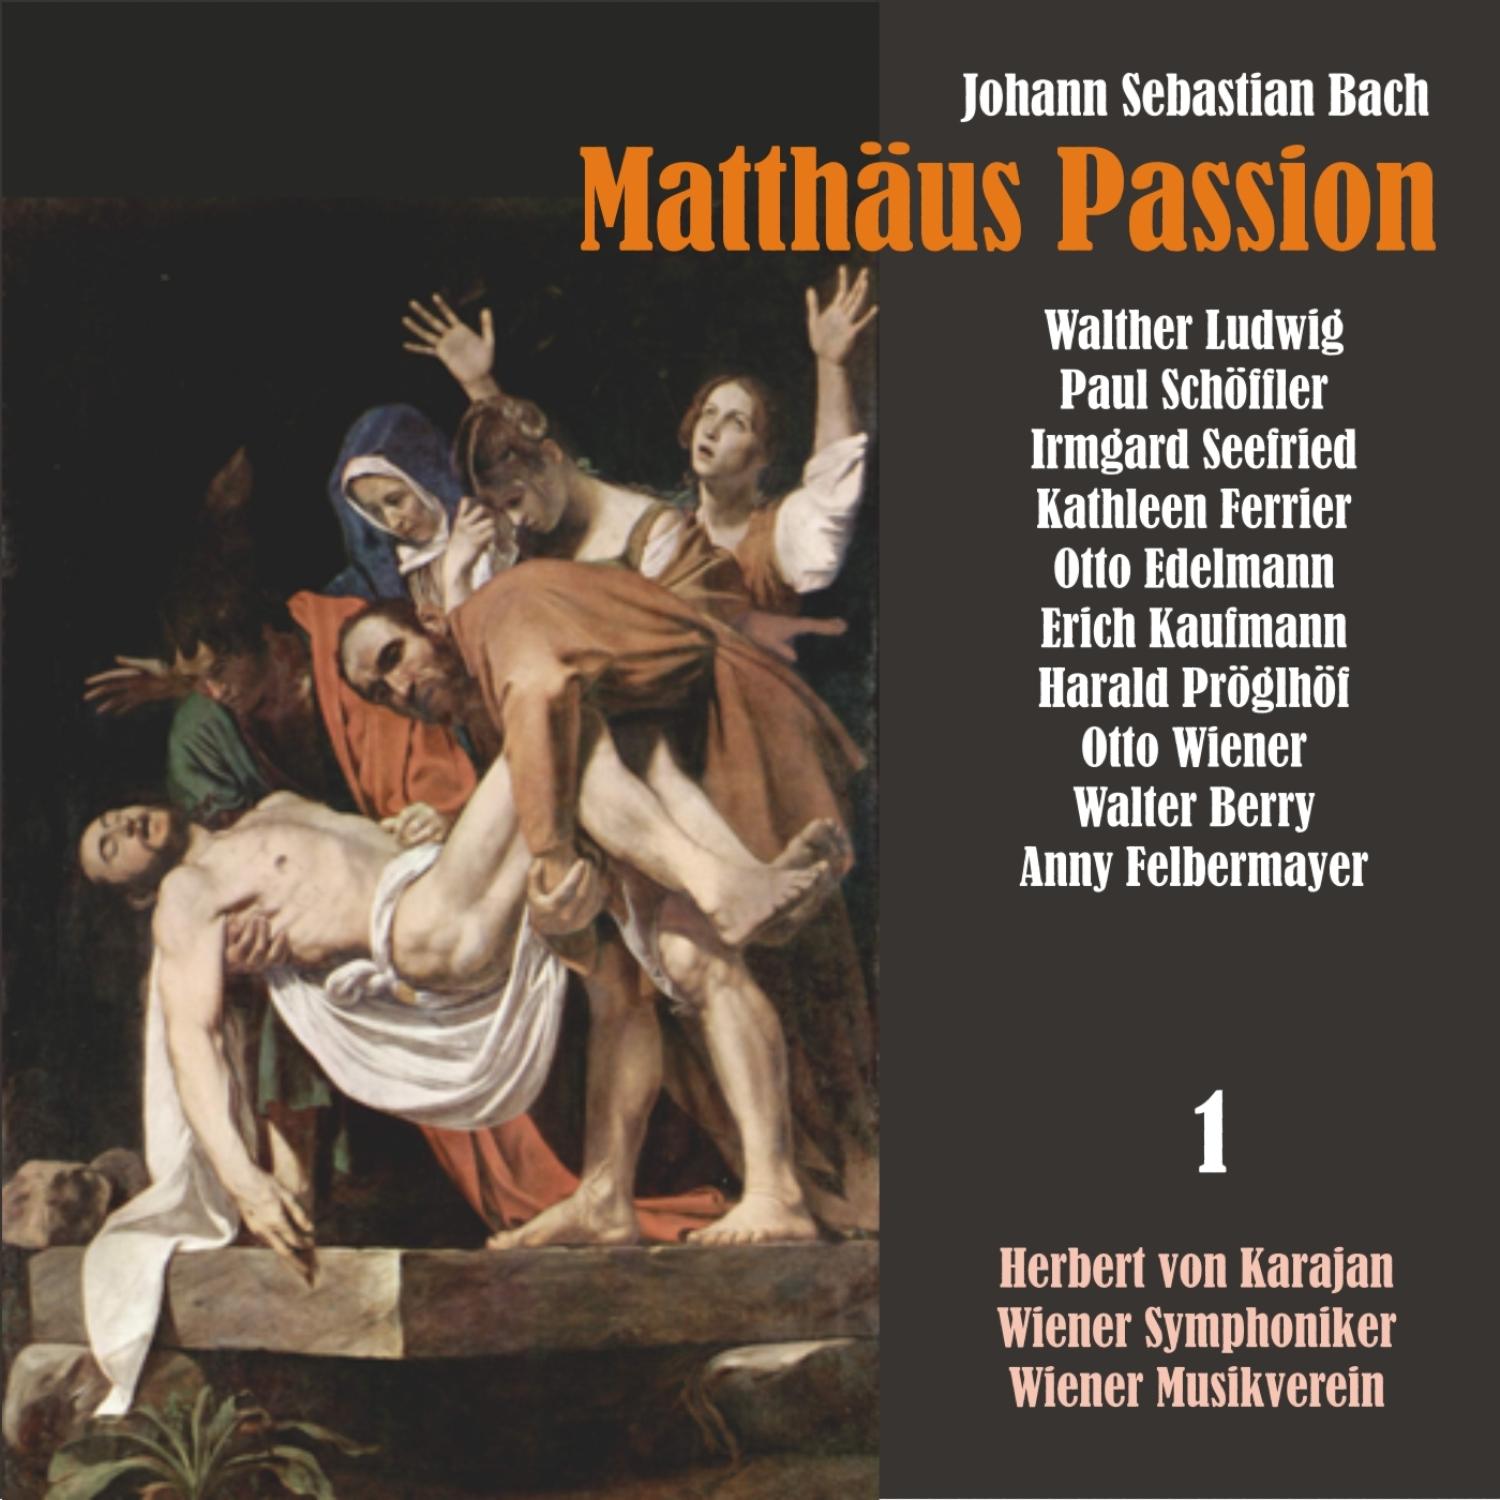 Matth us Passion, BWV 244: " Blute nur, du liebes Herz!"